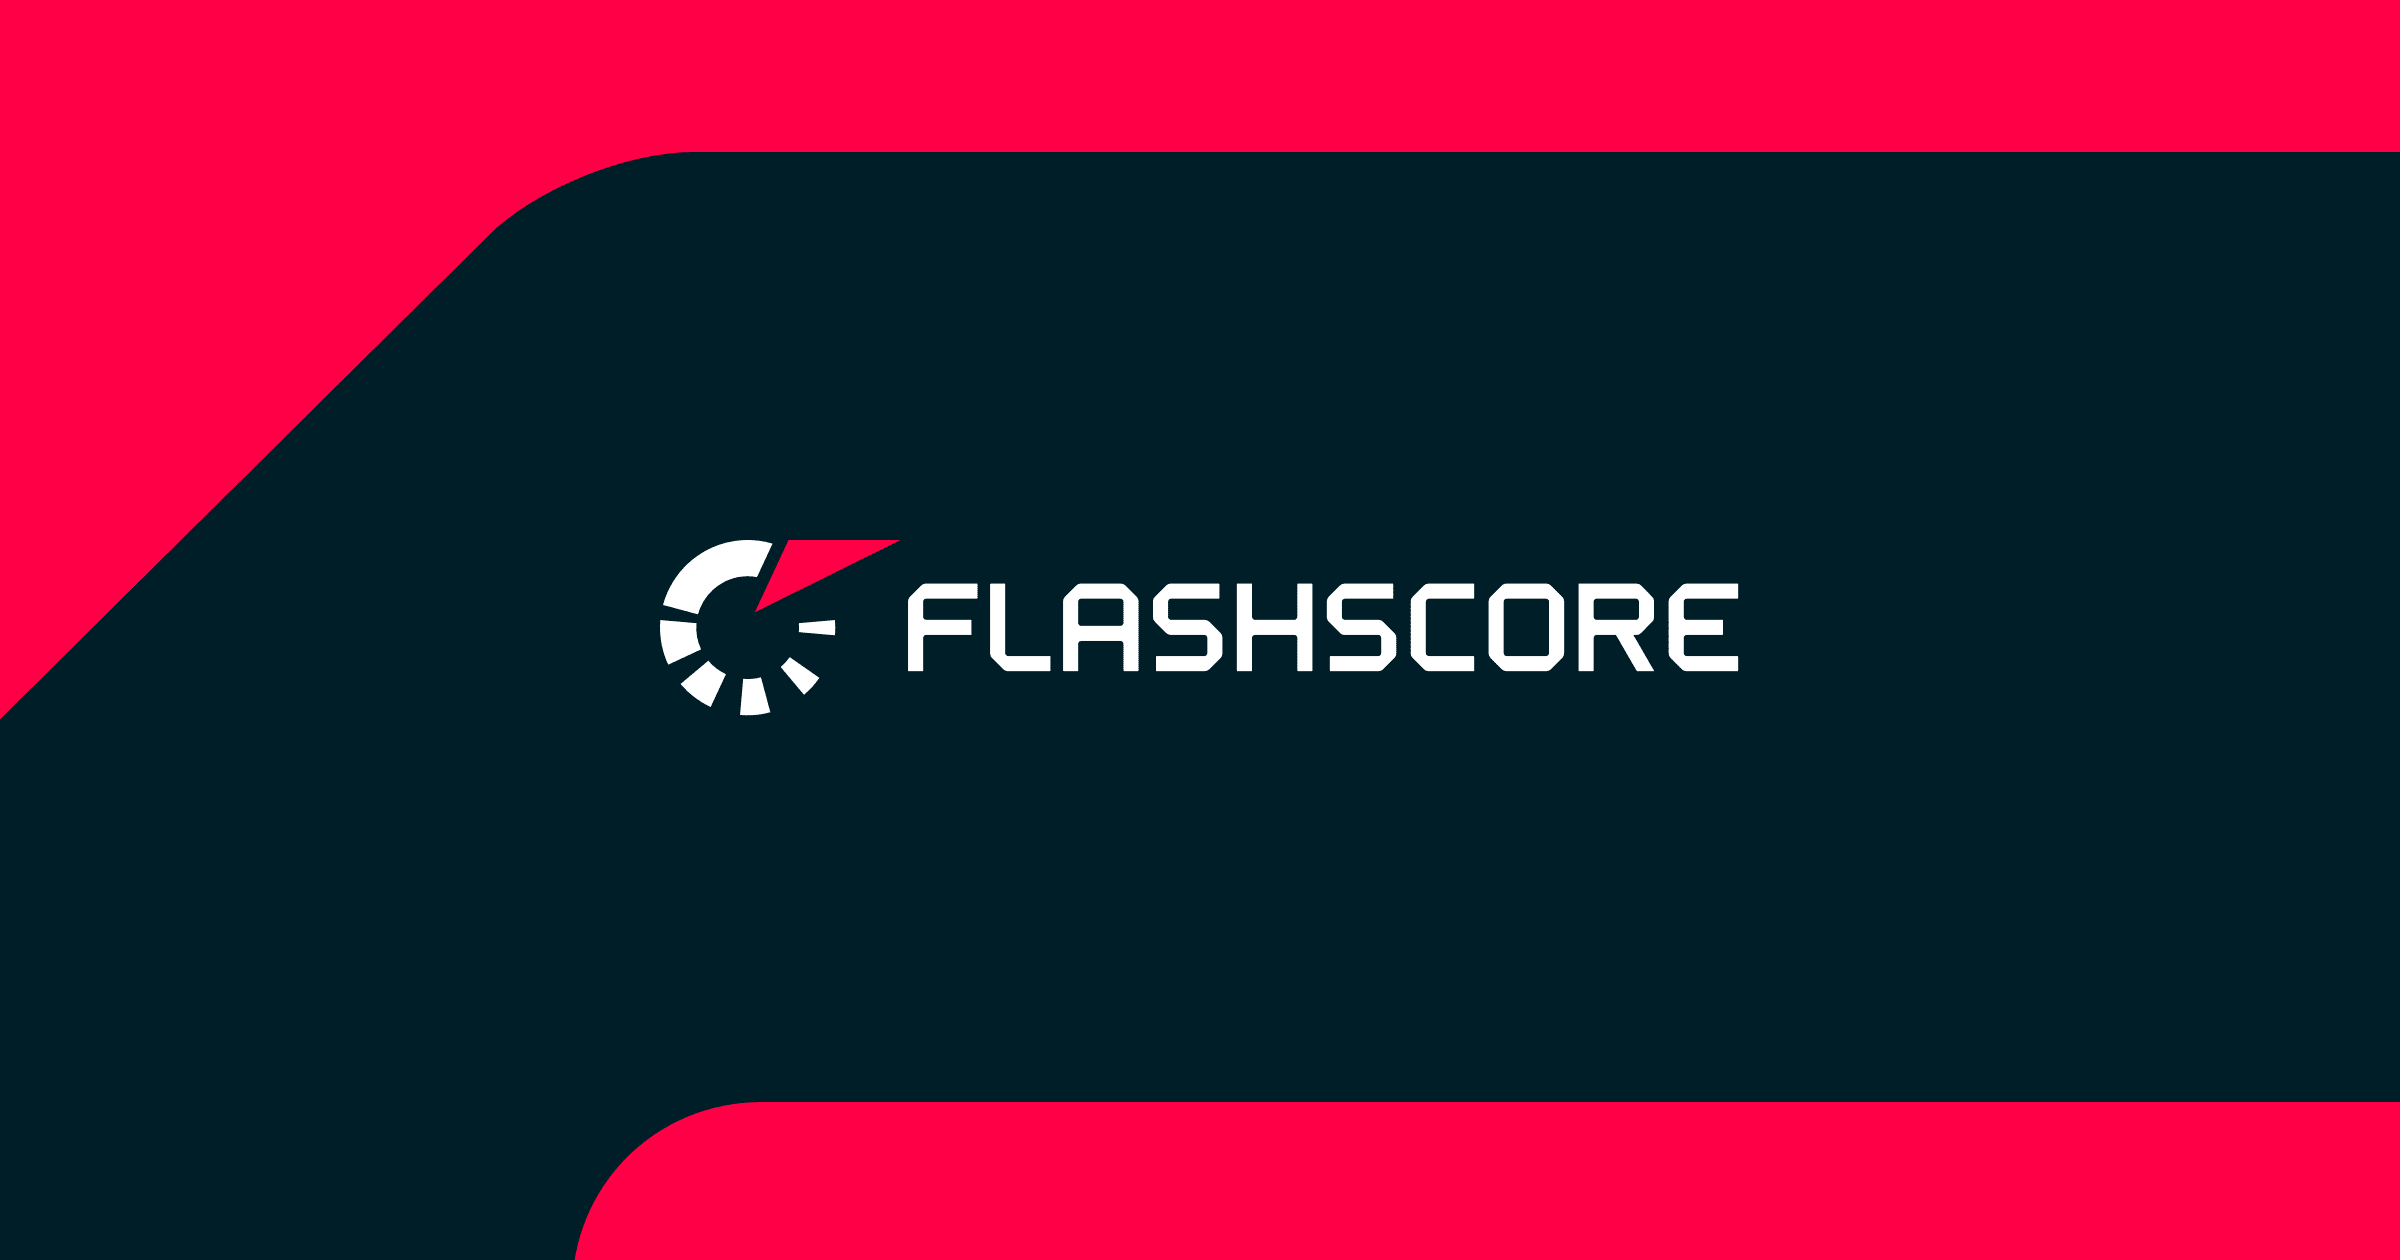 flashscore tennis scores